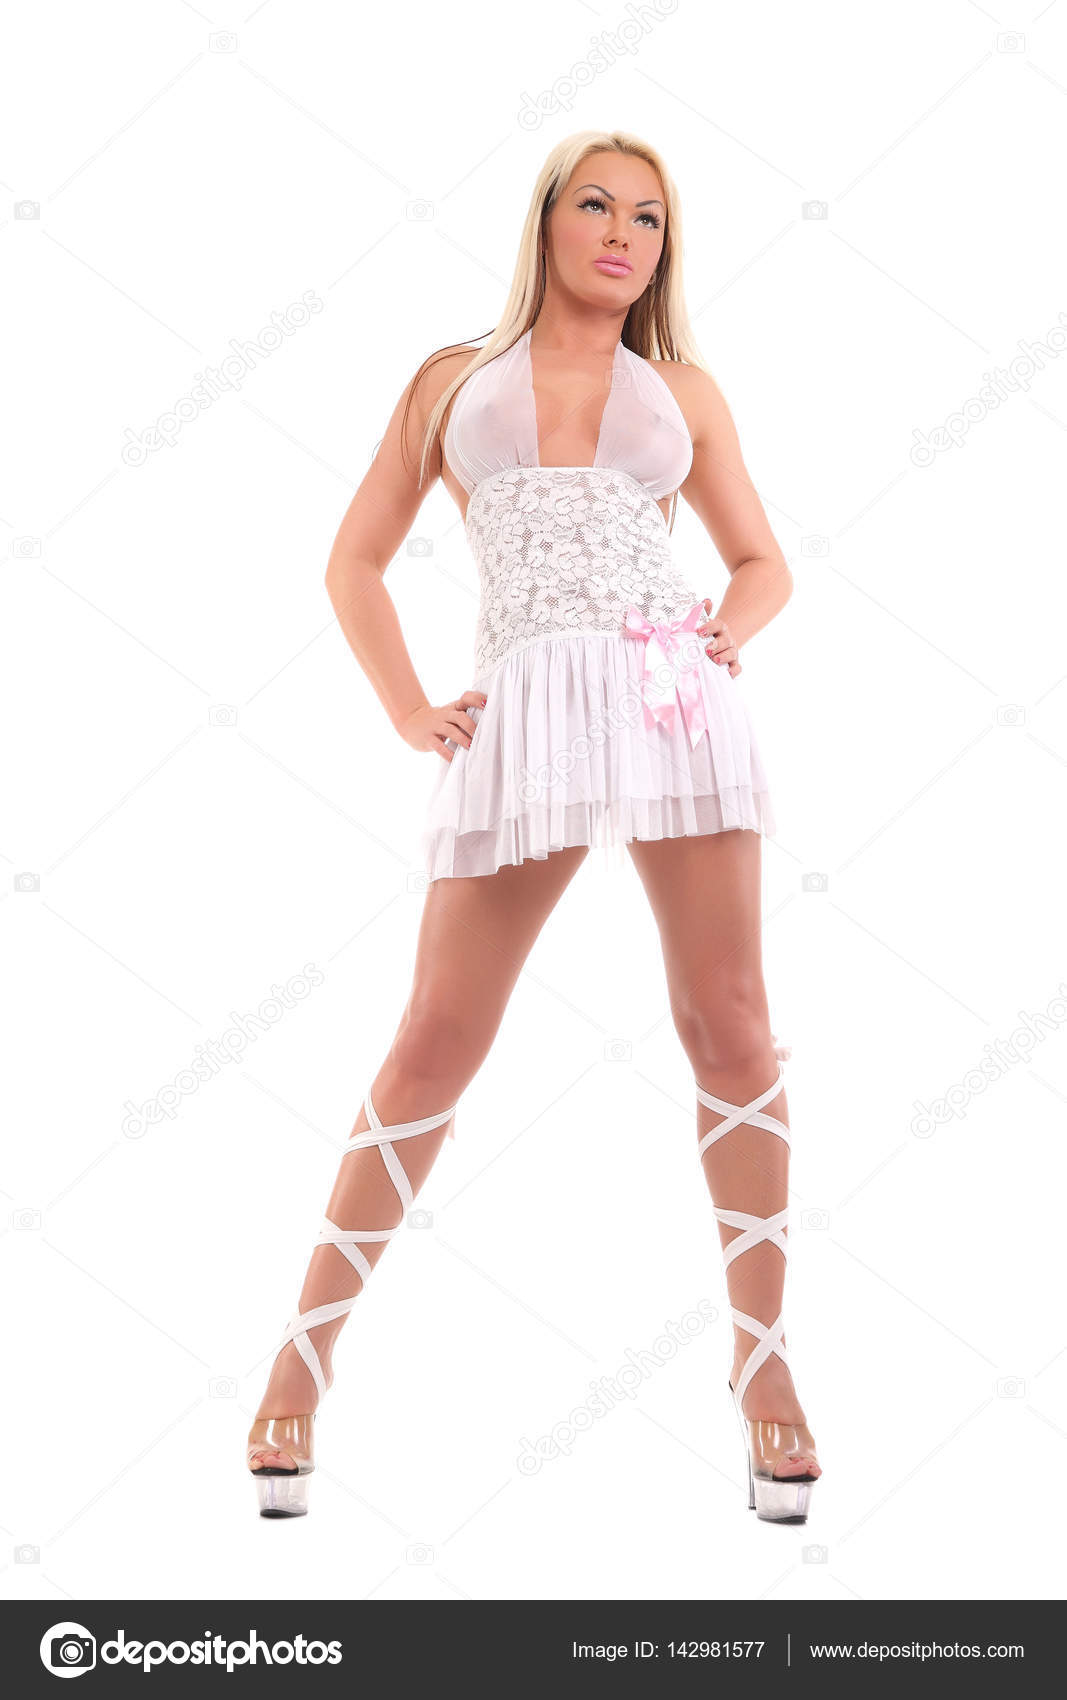 https://st3.depositphotos.com/2970081/14298/i/1600/depositphotos_142981577-stock-photo-stripper-girl-in-a-white.jpg